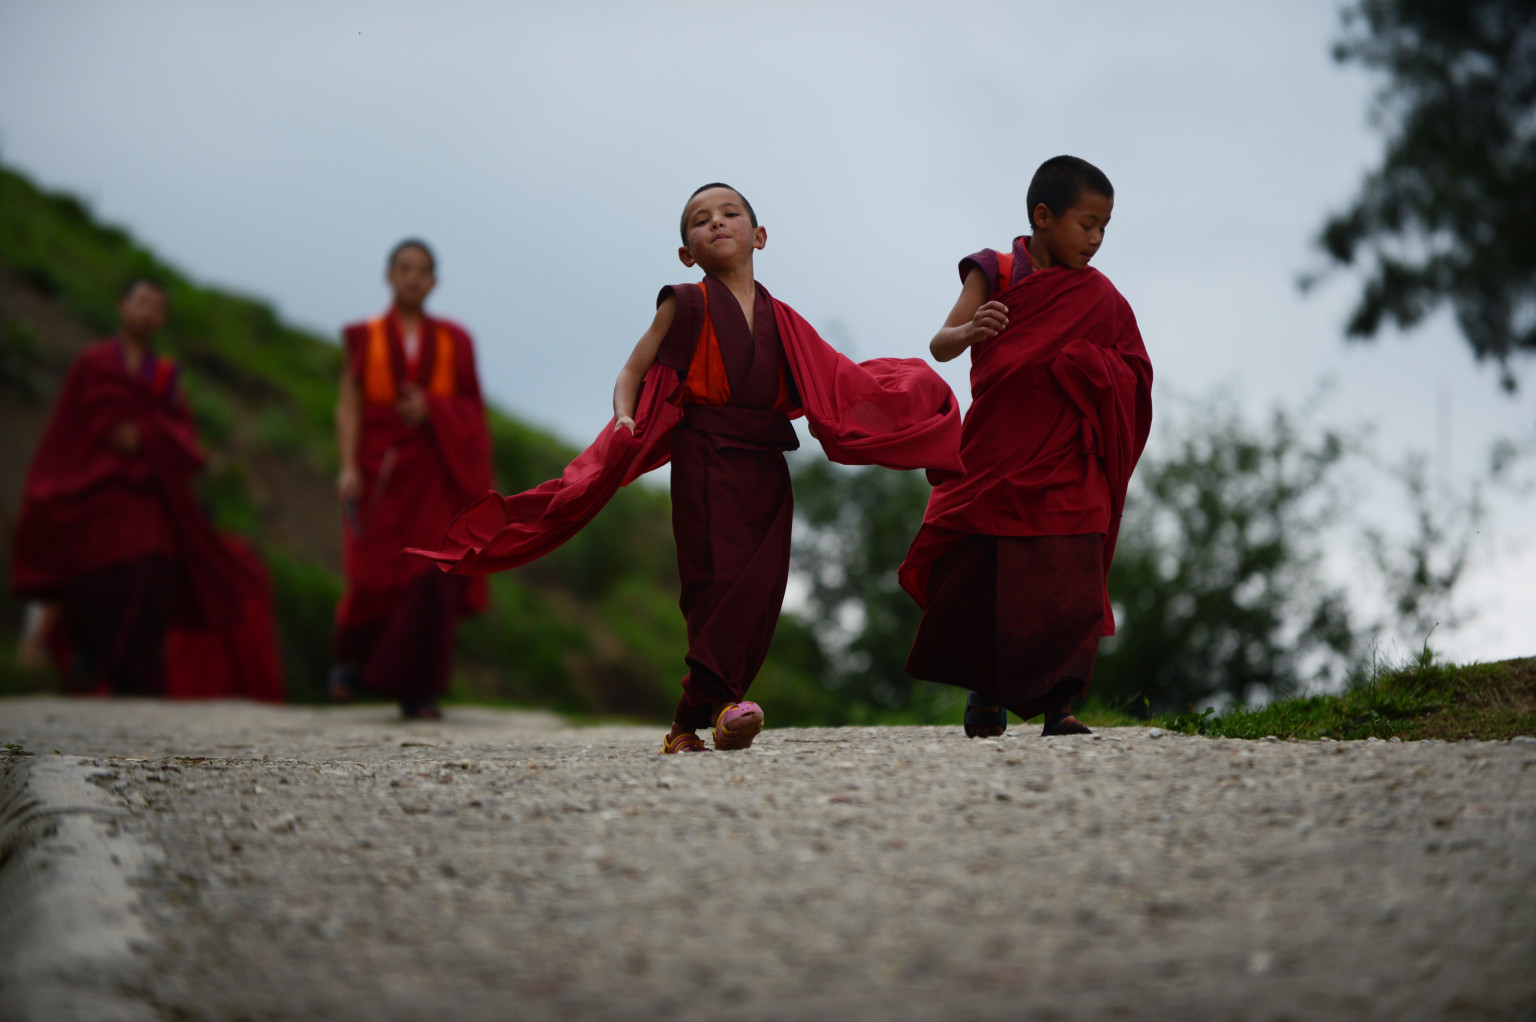 Тибетские правила воспитания детей – нам есть, чему поучиться!